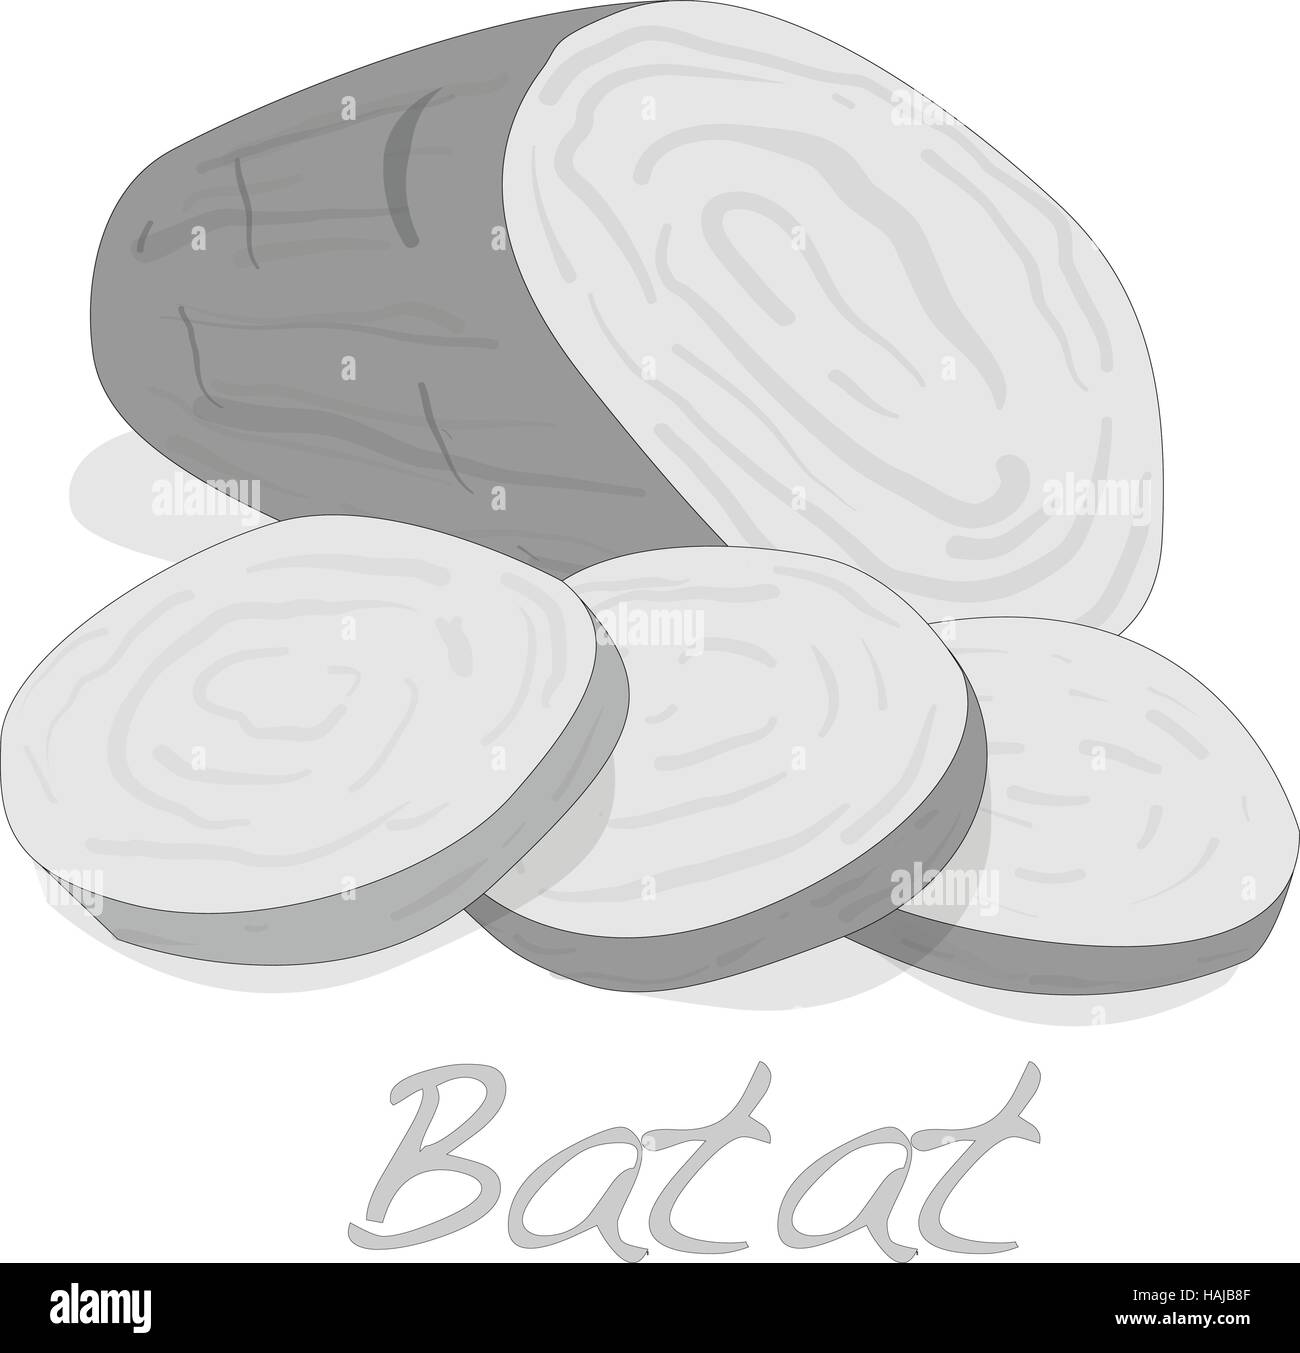 Batat, patata dolce vettore isolato su sfondo bianco Illustrazione Vettoriale